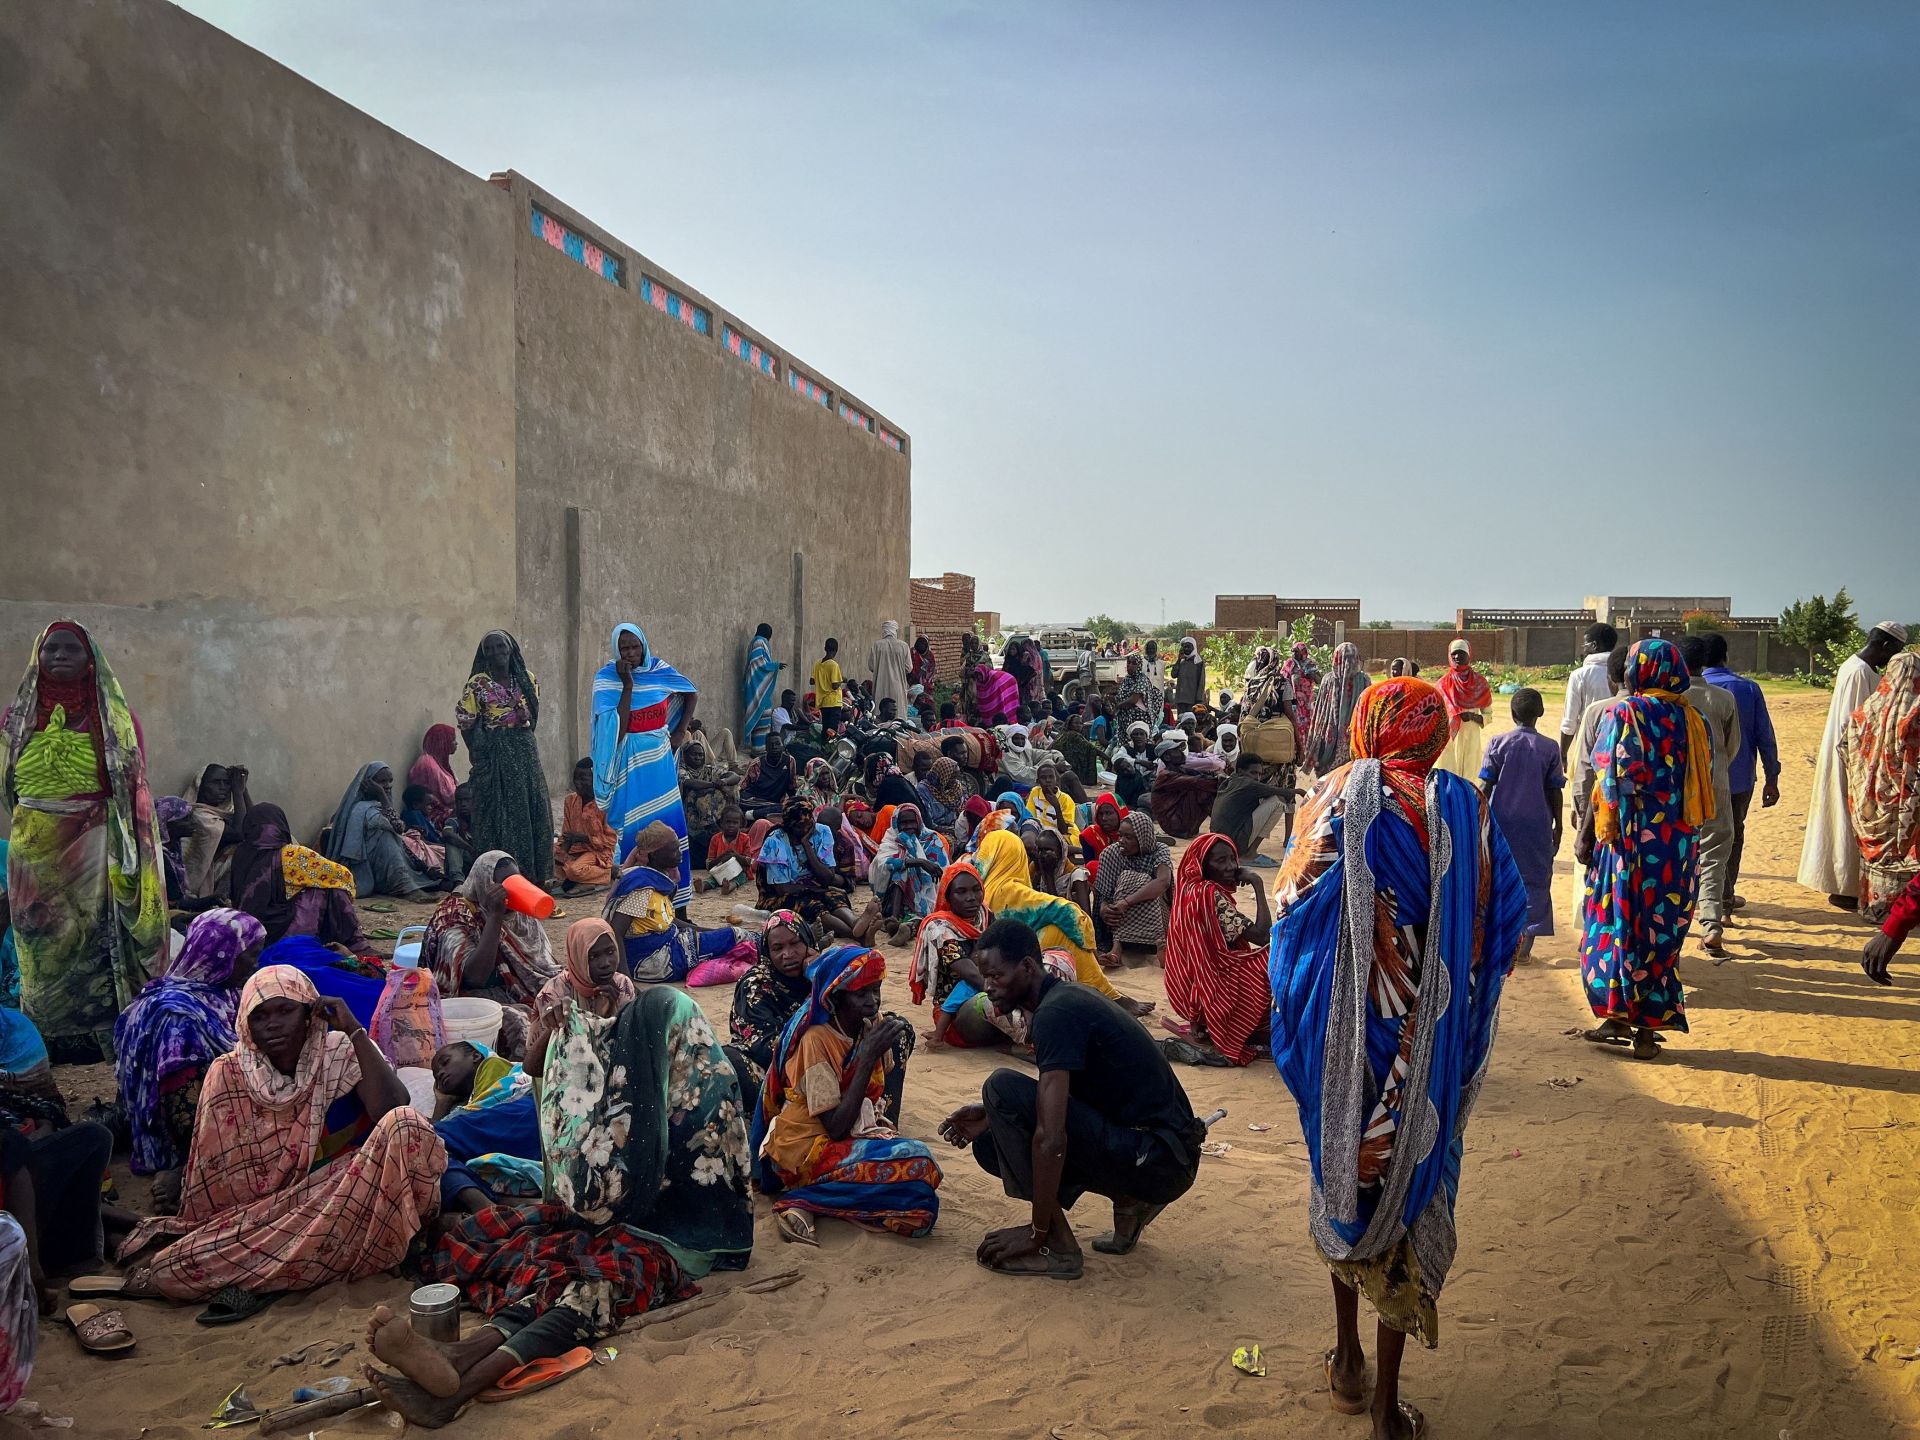 تشاد تعلن حالة طوارئ غذائية مع تدفق اللاجئين من السودان | أخبار – البوكس نيوز